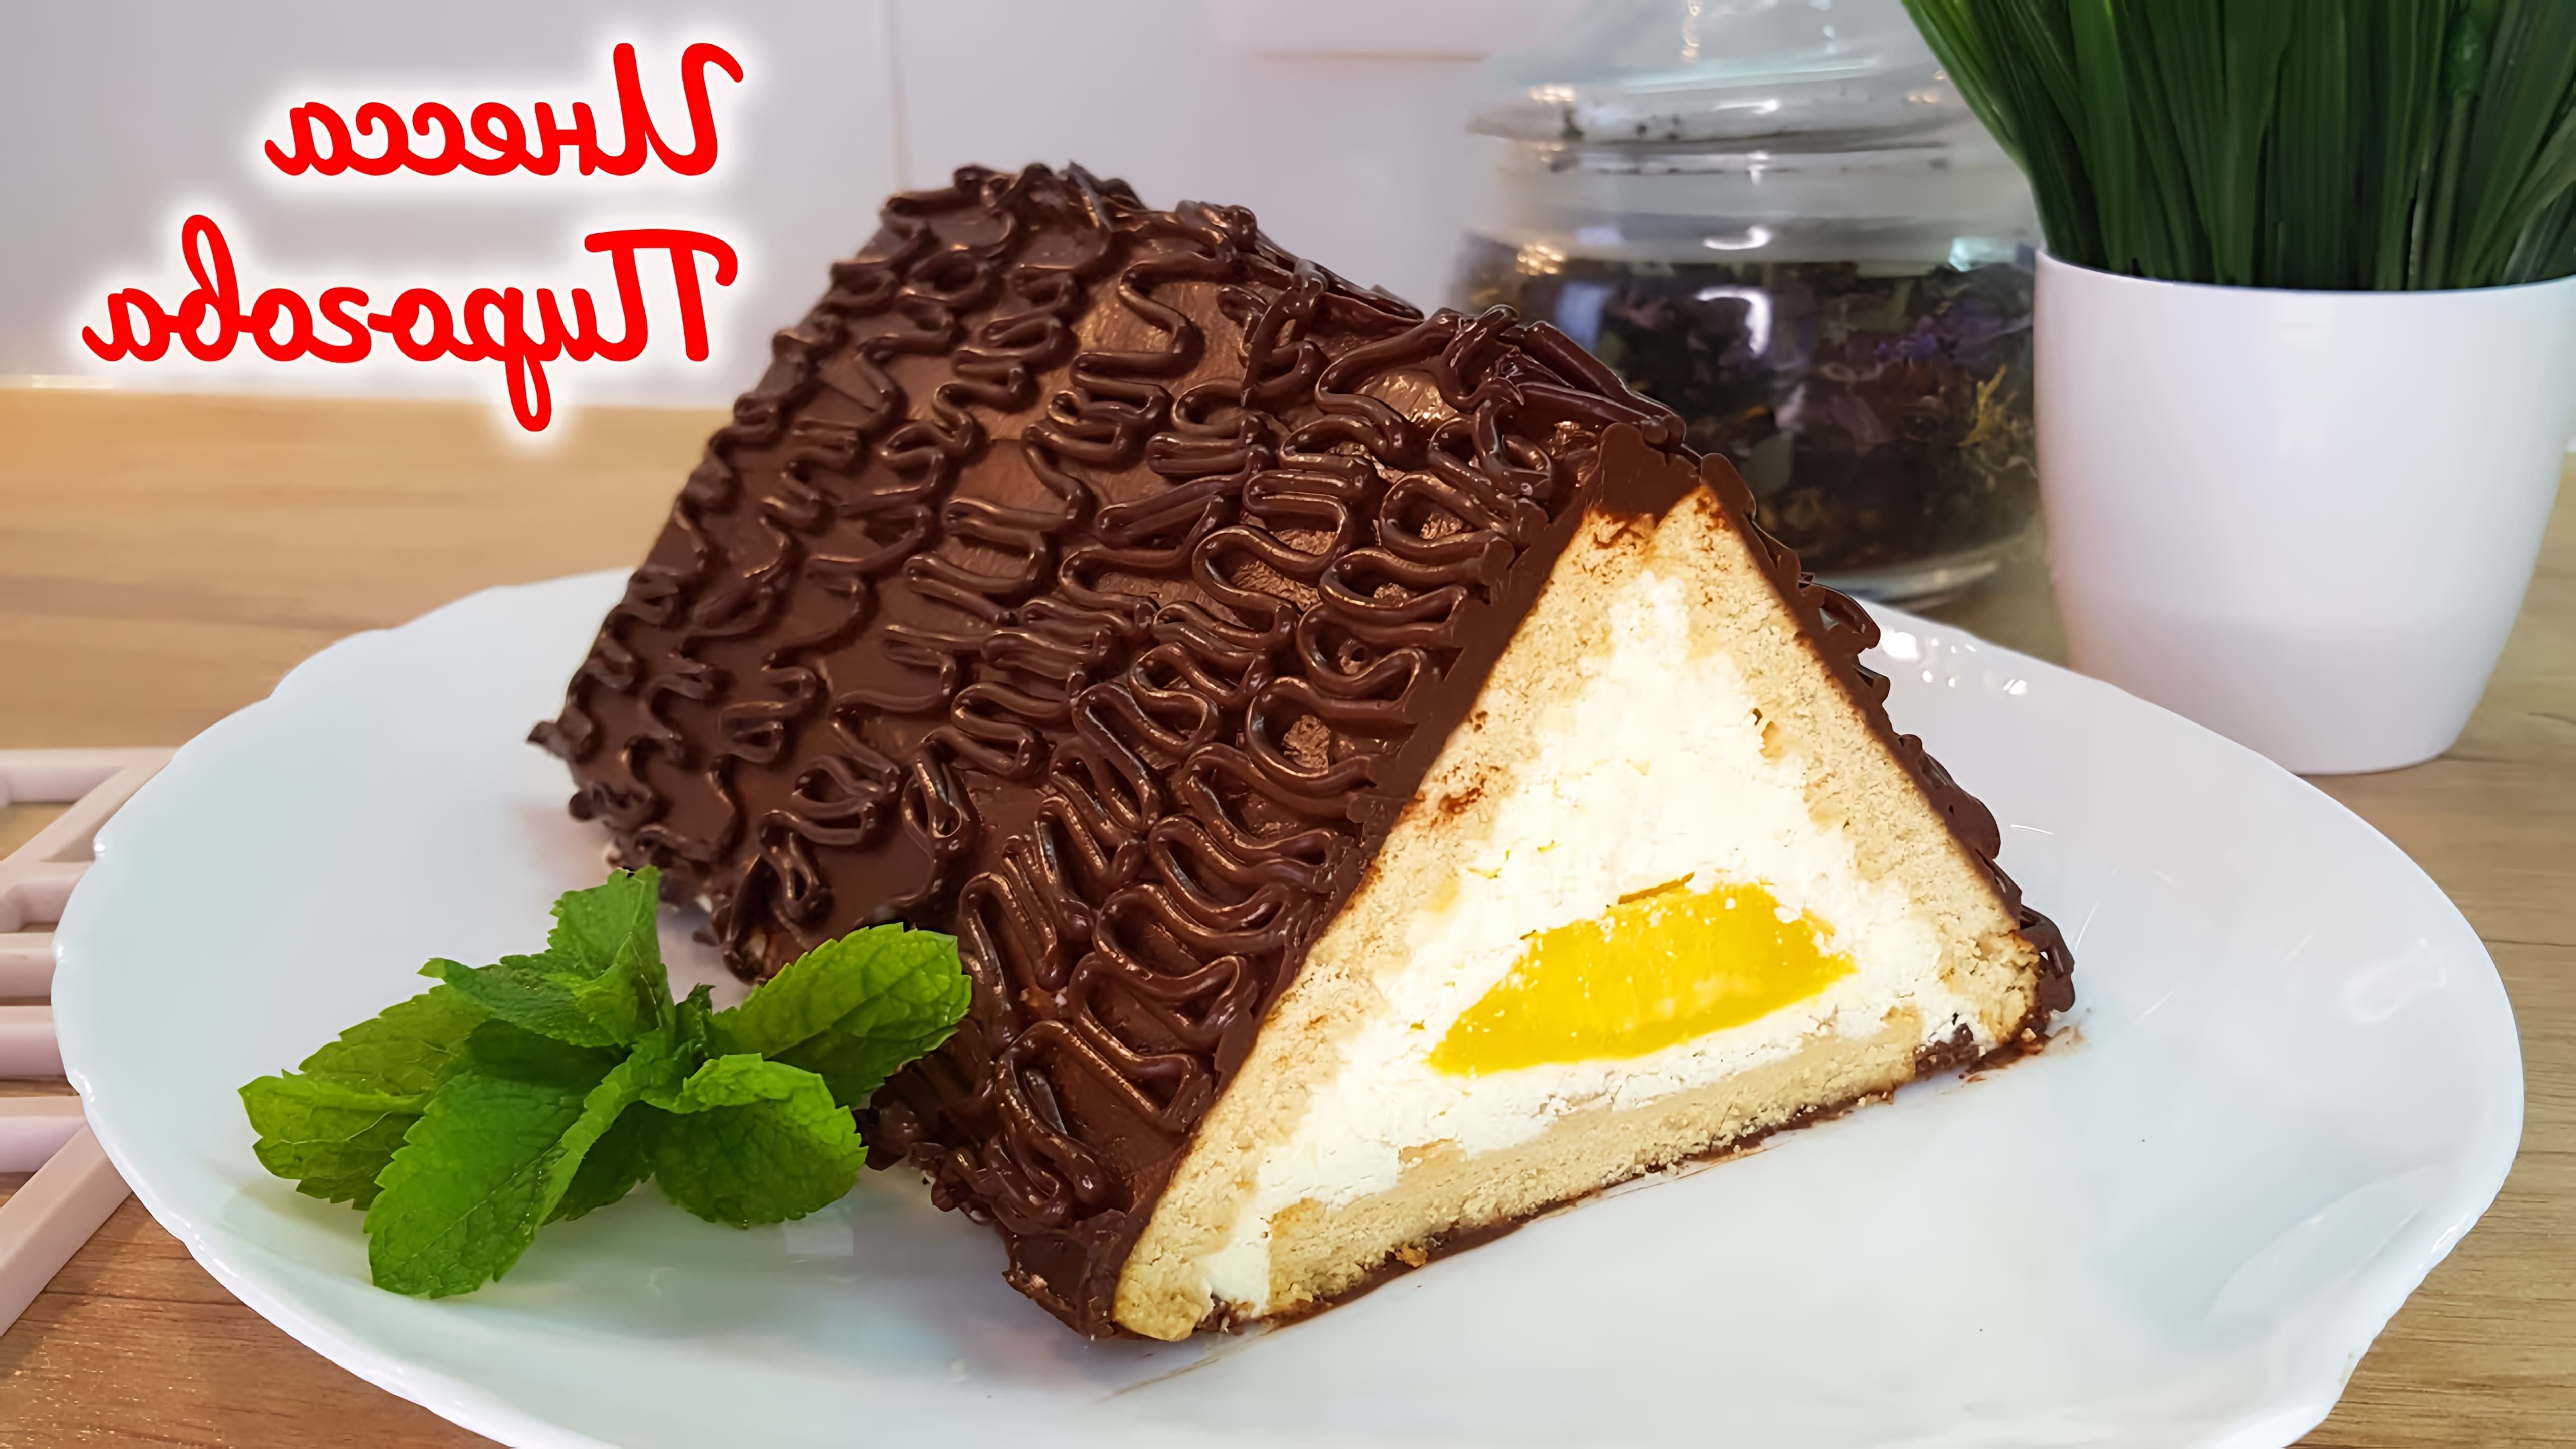 В этом видео-ролике вы увидите рецепт приготовления вкусного и оригинального торта "Шалаш любви" без выпечки